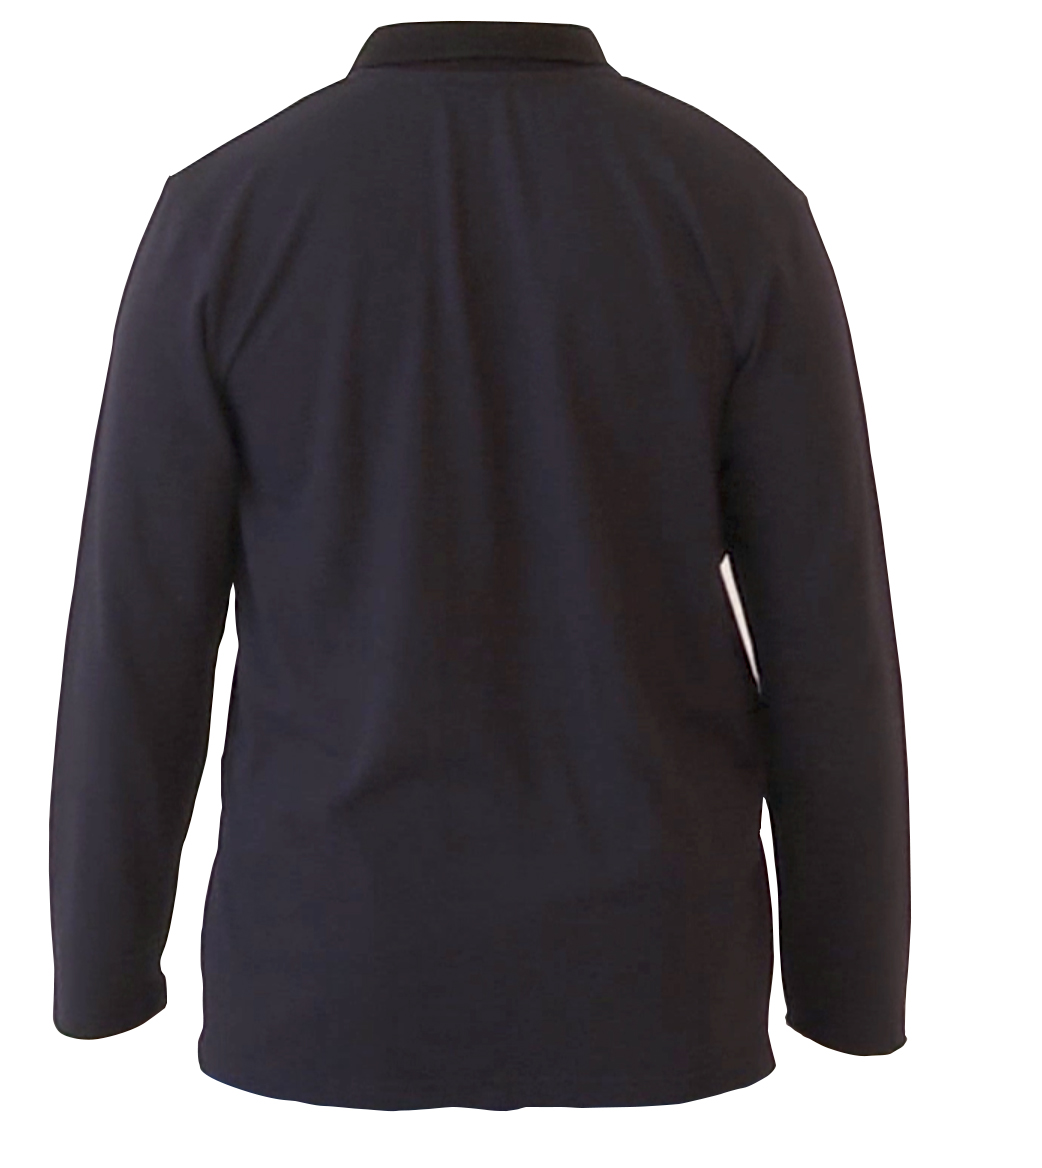 ESD Polo-Shirt Back AQGZ Style Black Unisex S Antistatic Clothing ESD Garment - 473.AQGZ-APS21-BKS